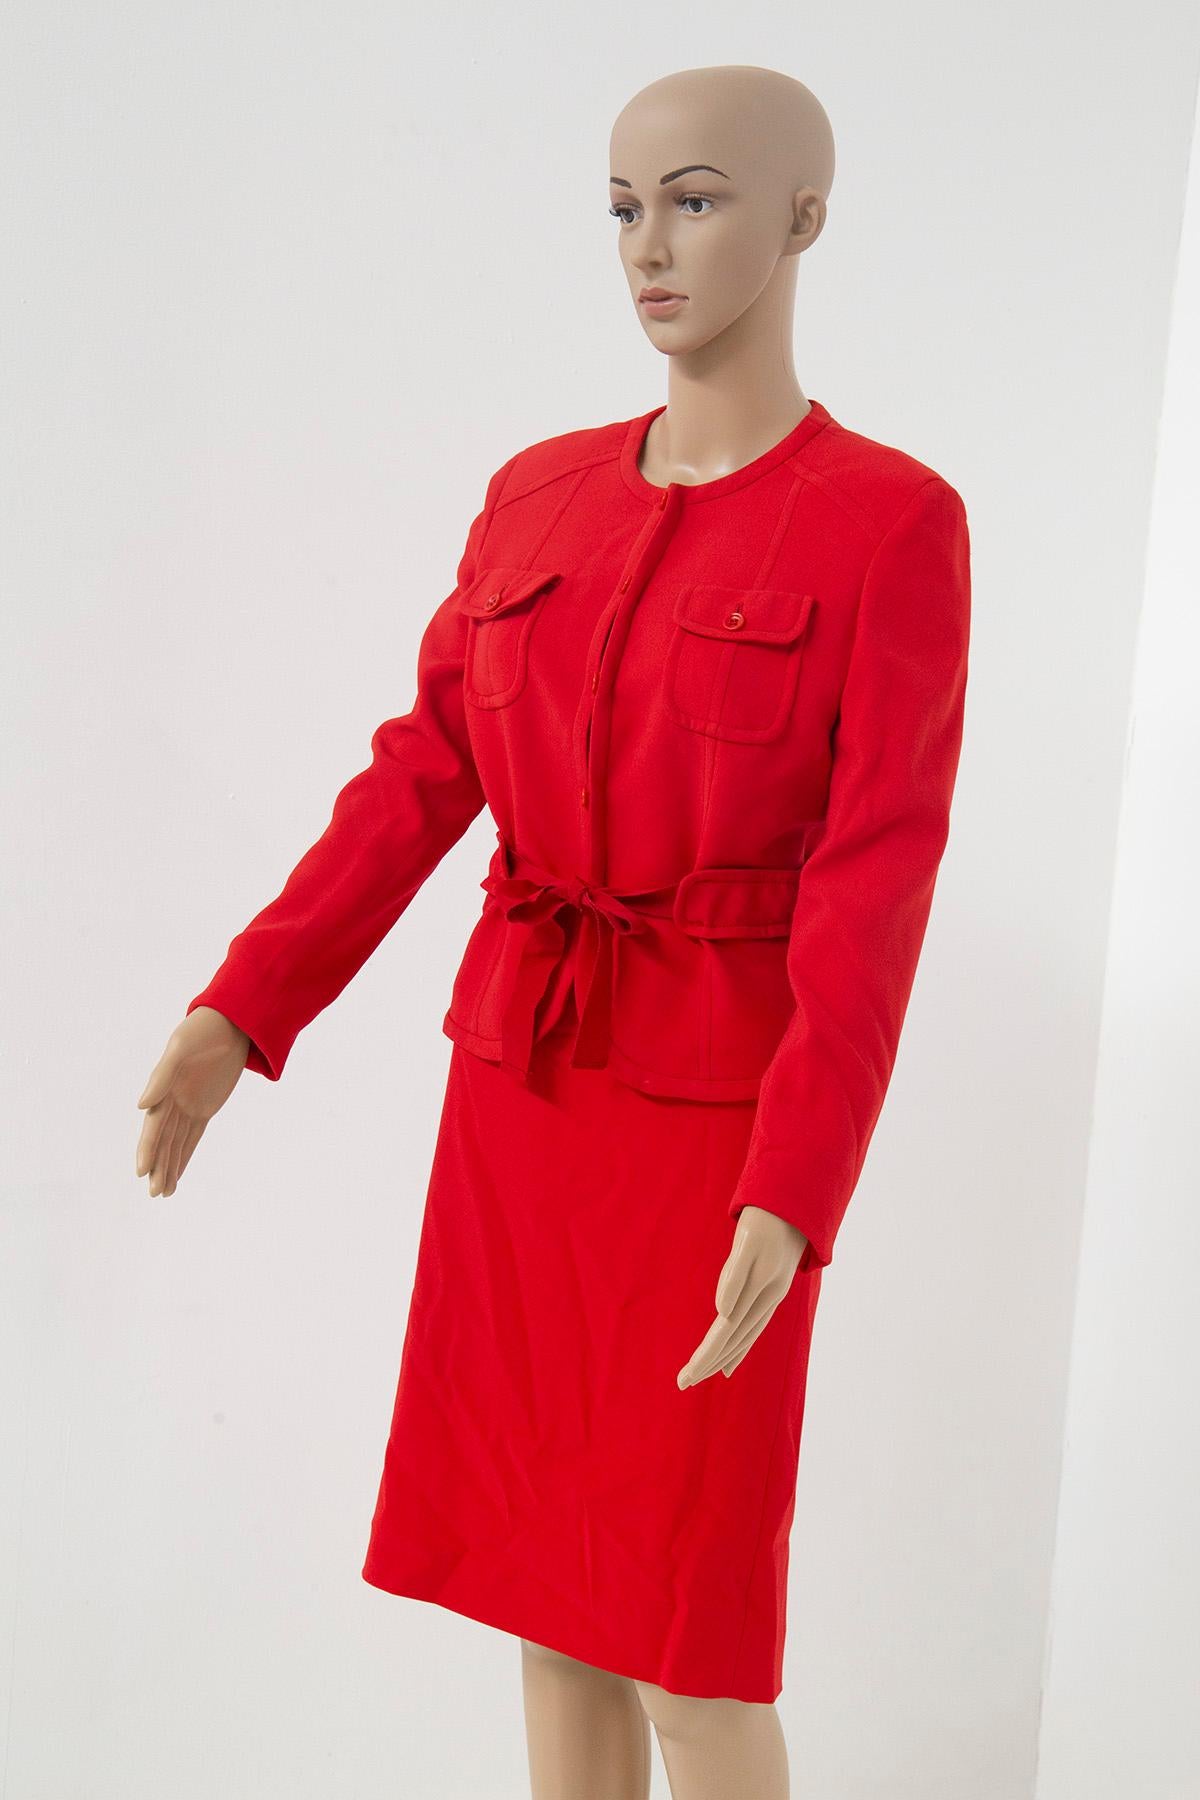 In der Welt der Vintage-Mode taucht ein wahres Meisterwerk auf: ein eleganter Valentino-Hosenanzug in der ikonischen Farbe Rot, ein Symbol für Leidenschaft und zeitlosen Reiz. Dieses Ensemble aus den 1990er Jahren ist ein Zeugnis für Valentinos